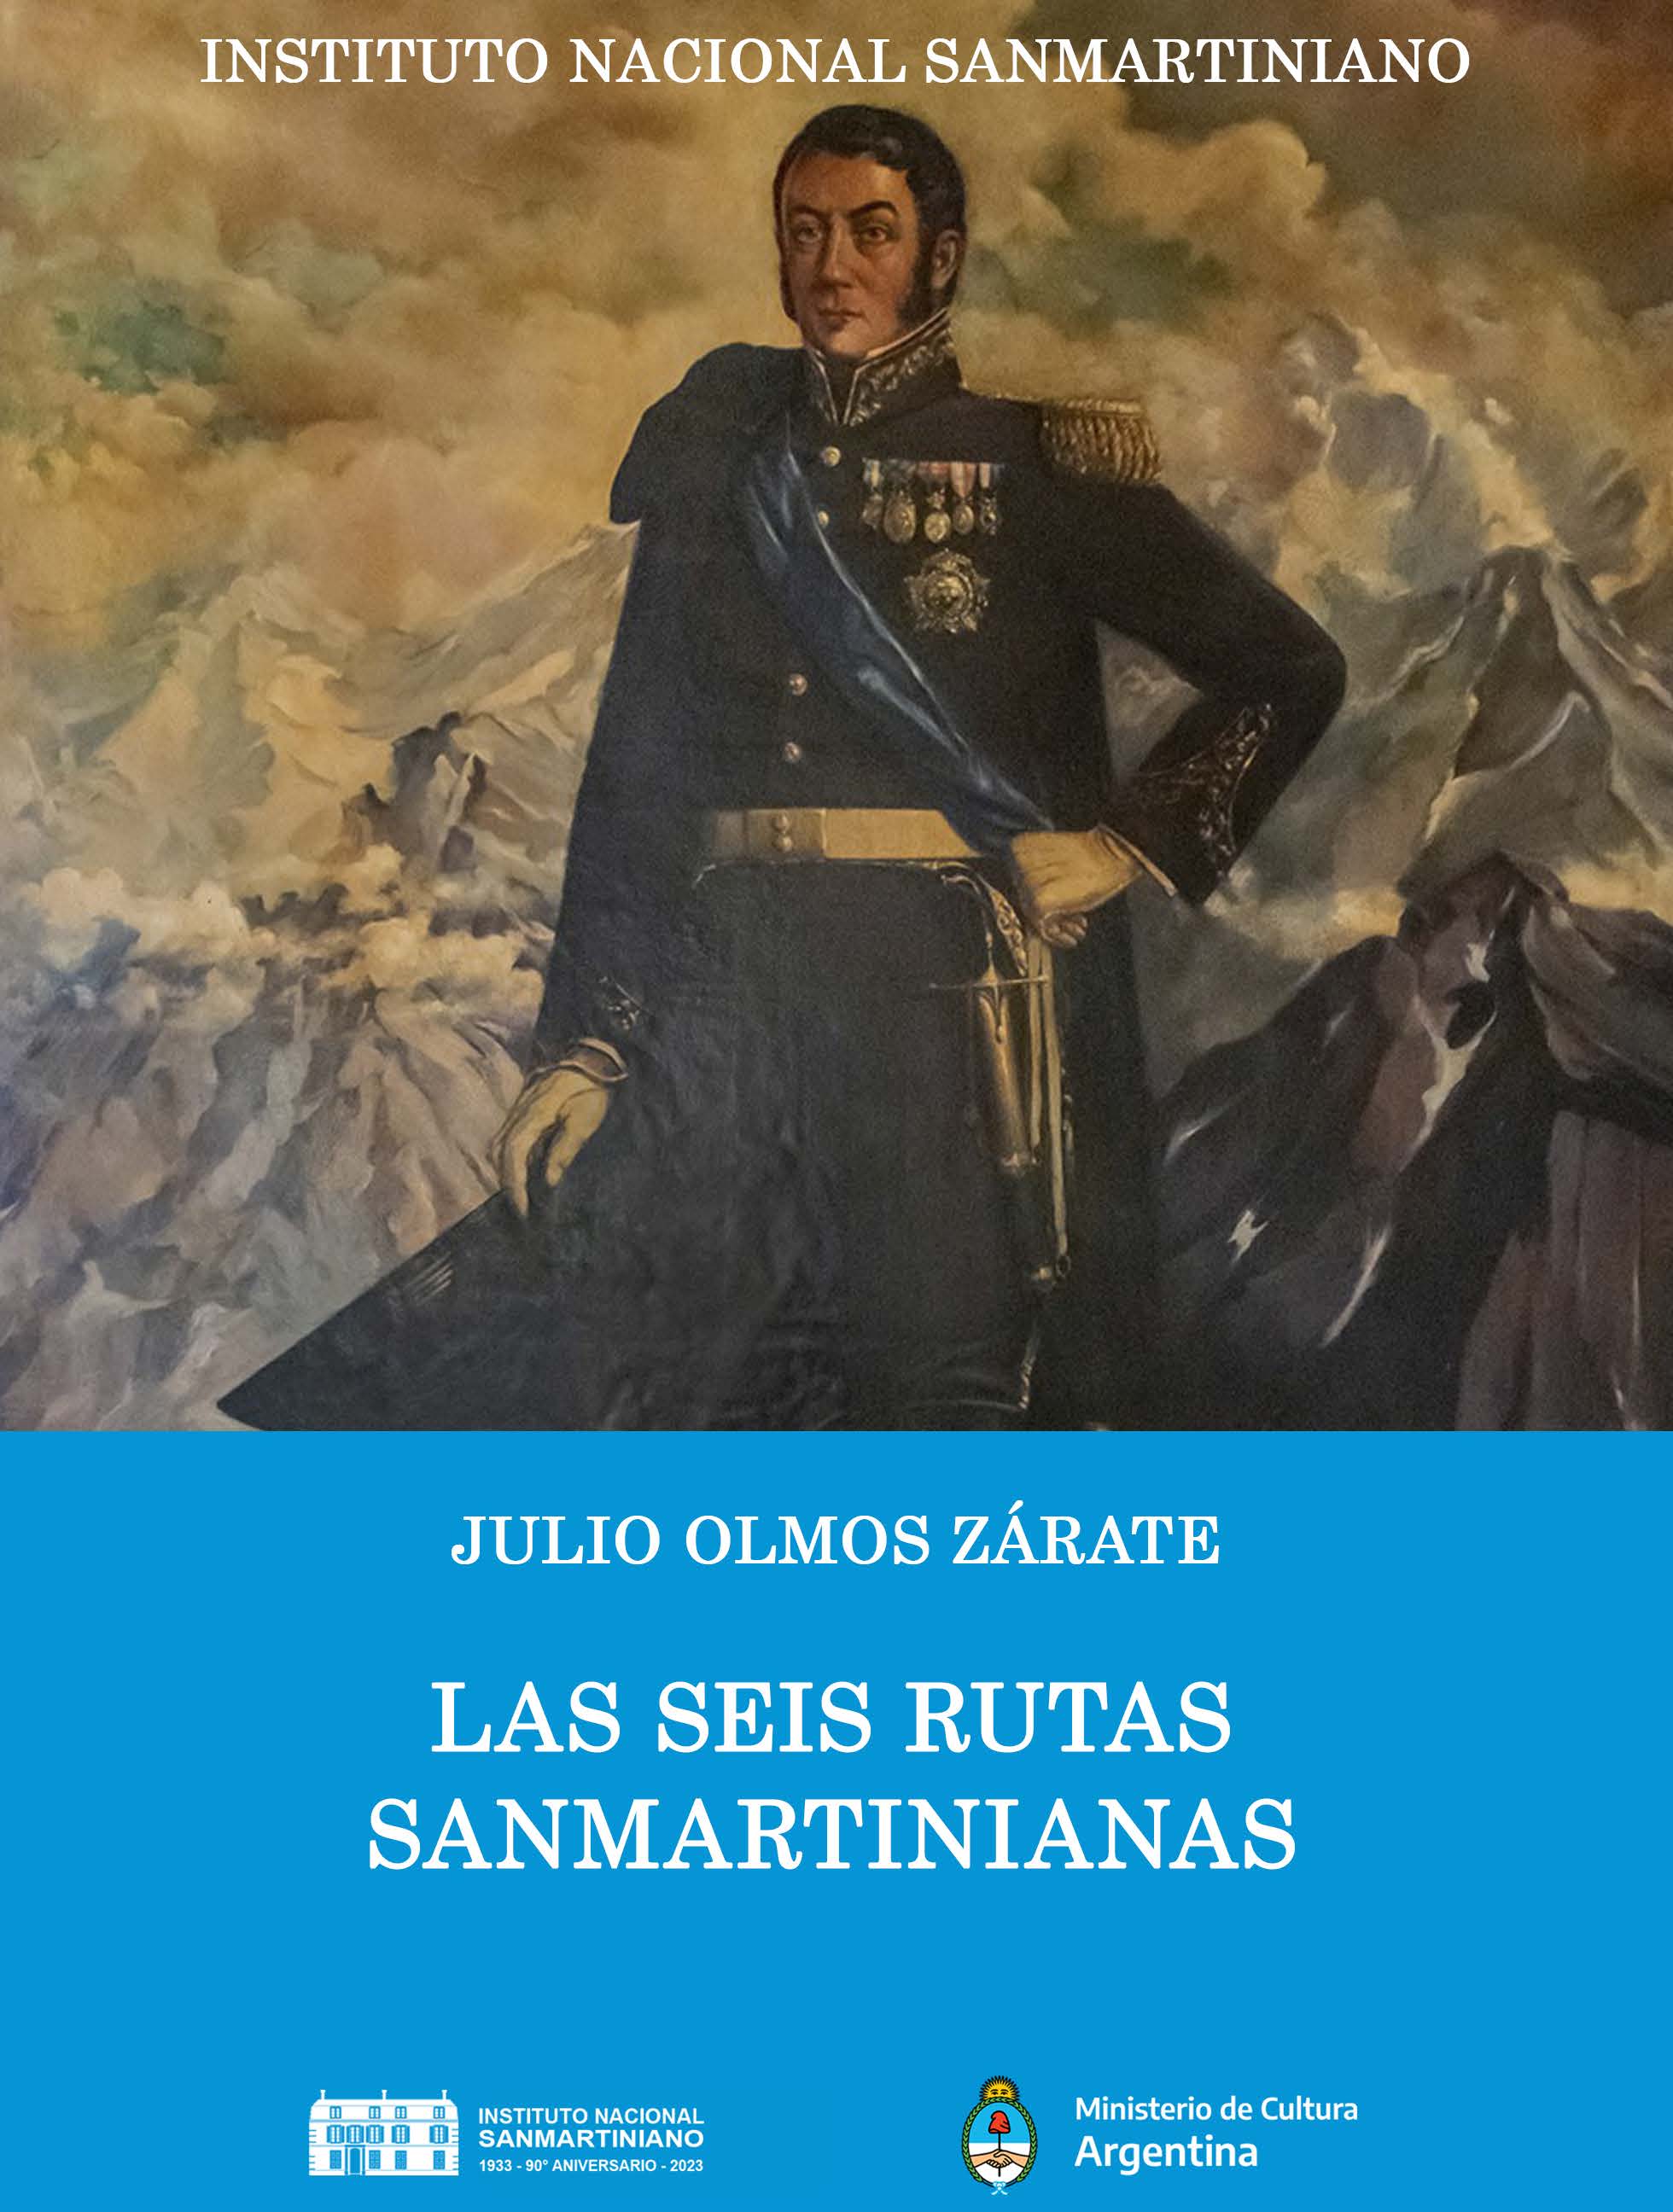 OLMOS ZÁRATE, Julio. "Las seis rutas sanmartinianas". Instituto Nacional Sanmartiniano. Buenos Aires, 2023.